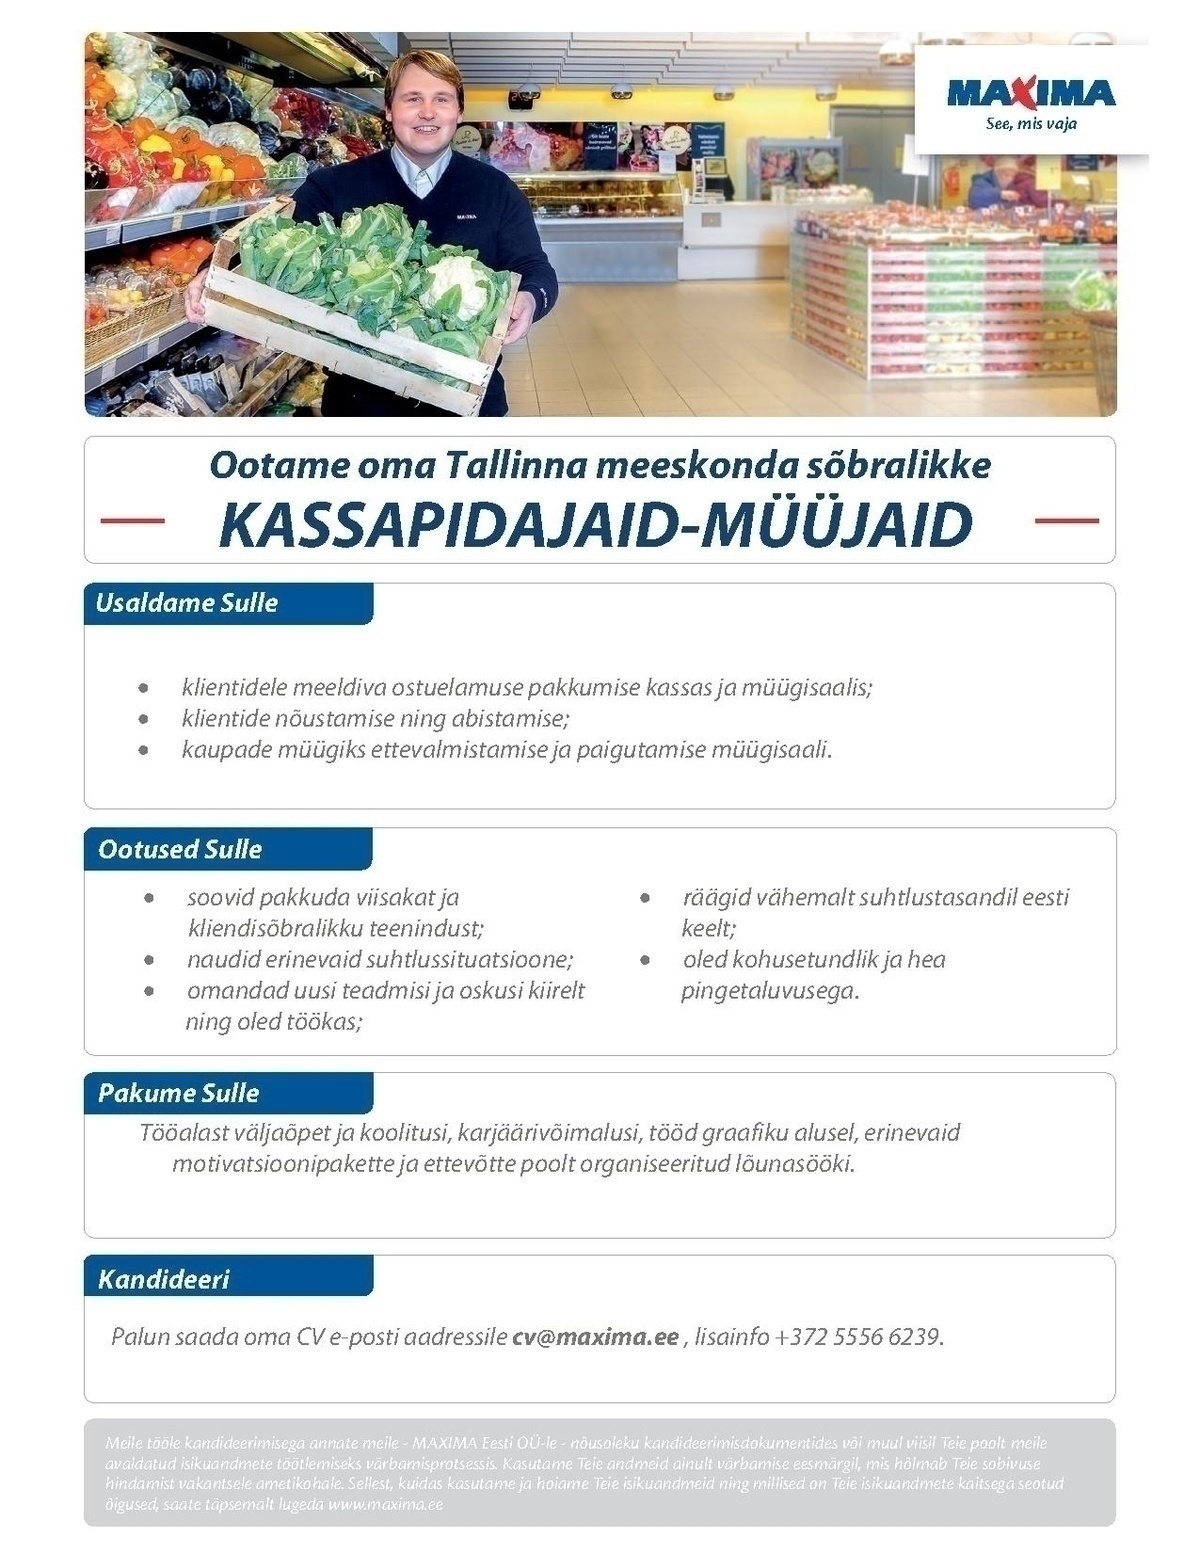 Maxima Eesti OÜ Kassapidaja-müüja Kopli Maxima (Stroomi Keskus)